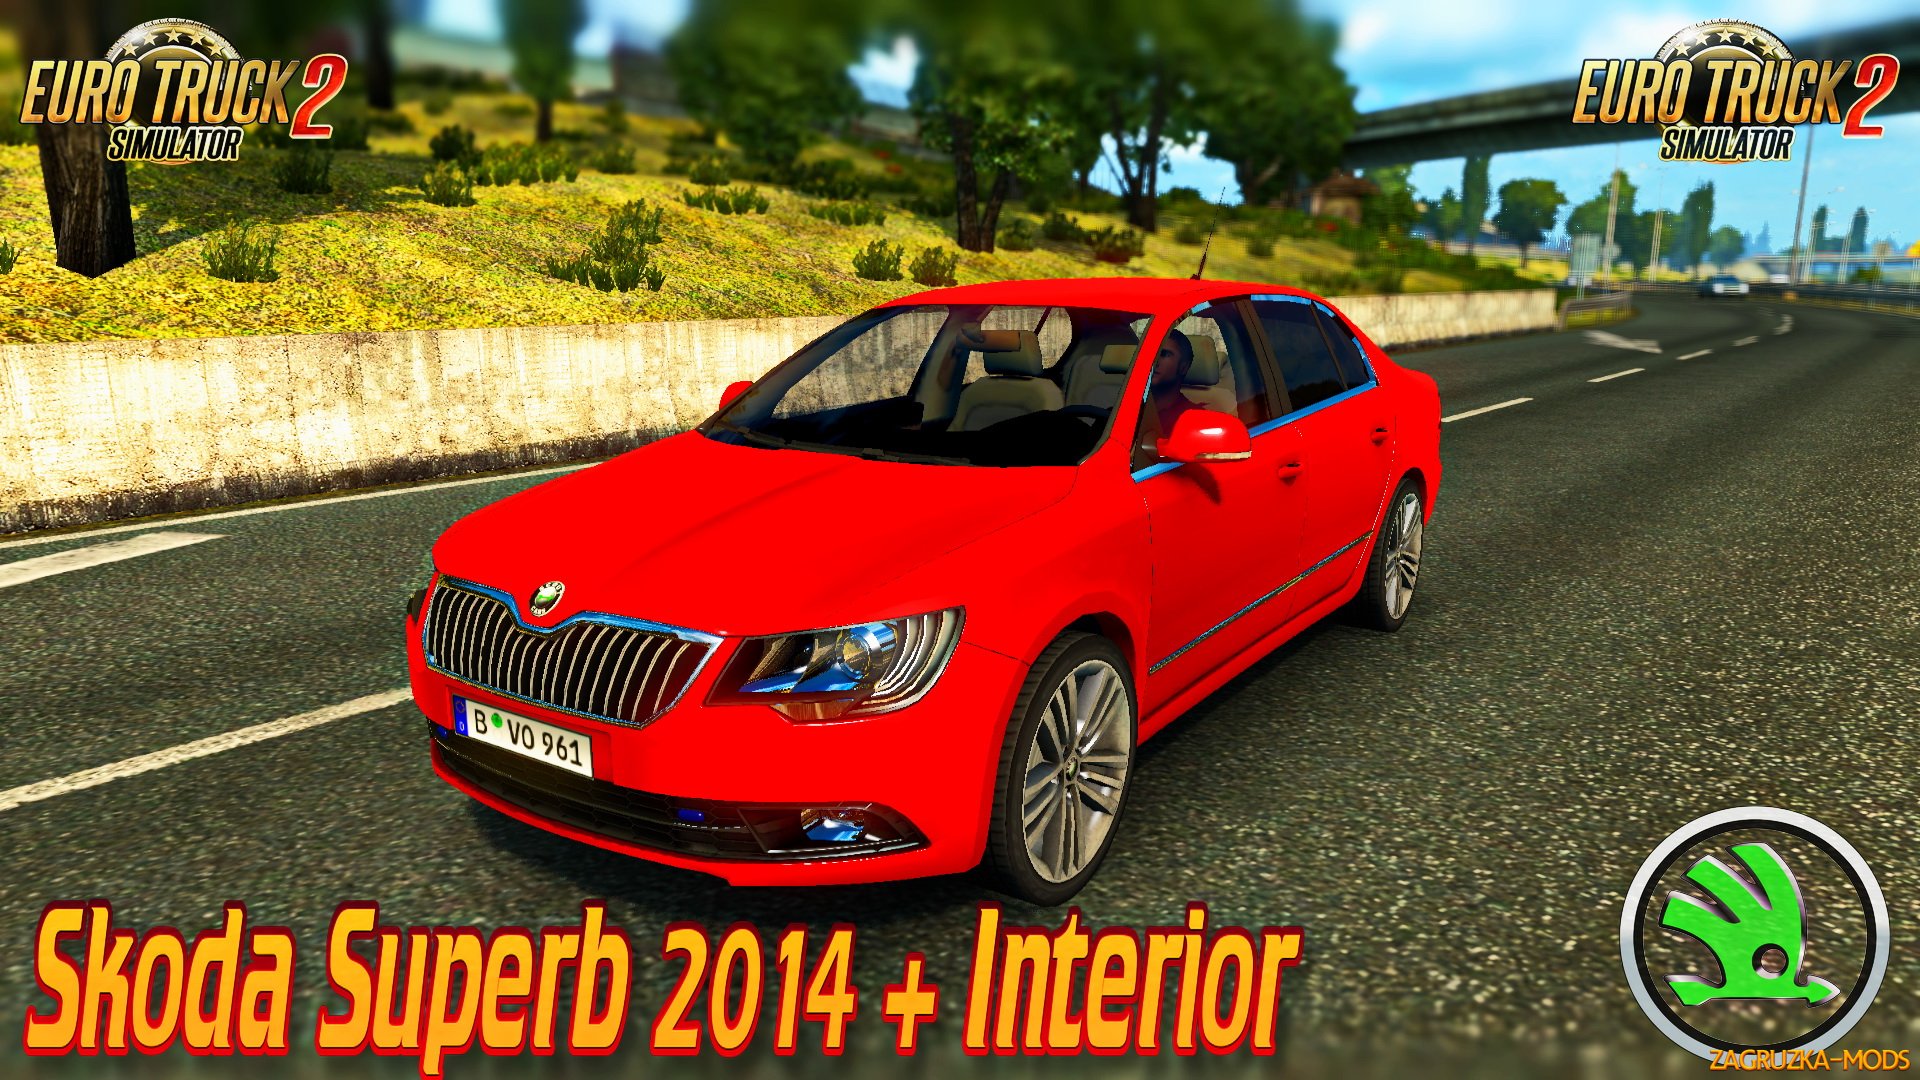 Skoda Superb 2014 + Interior v1.0 for ETS 2